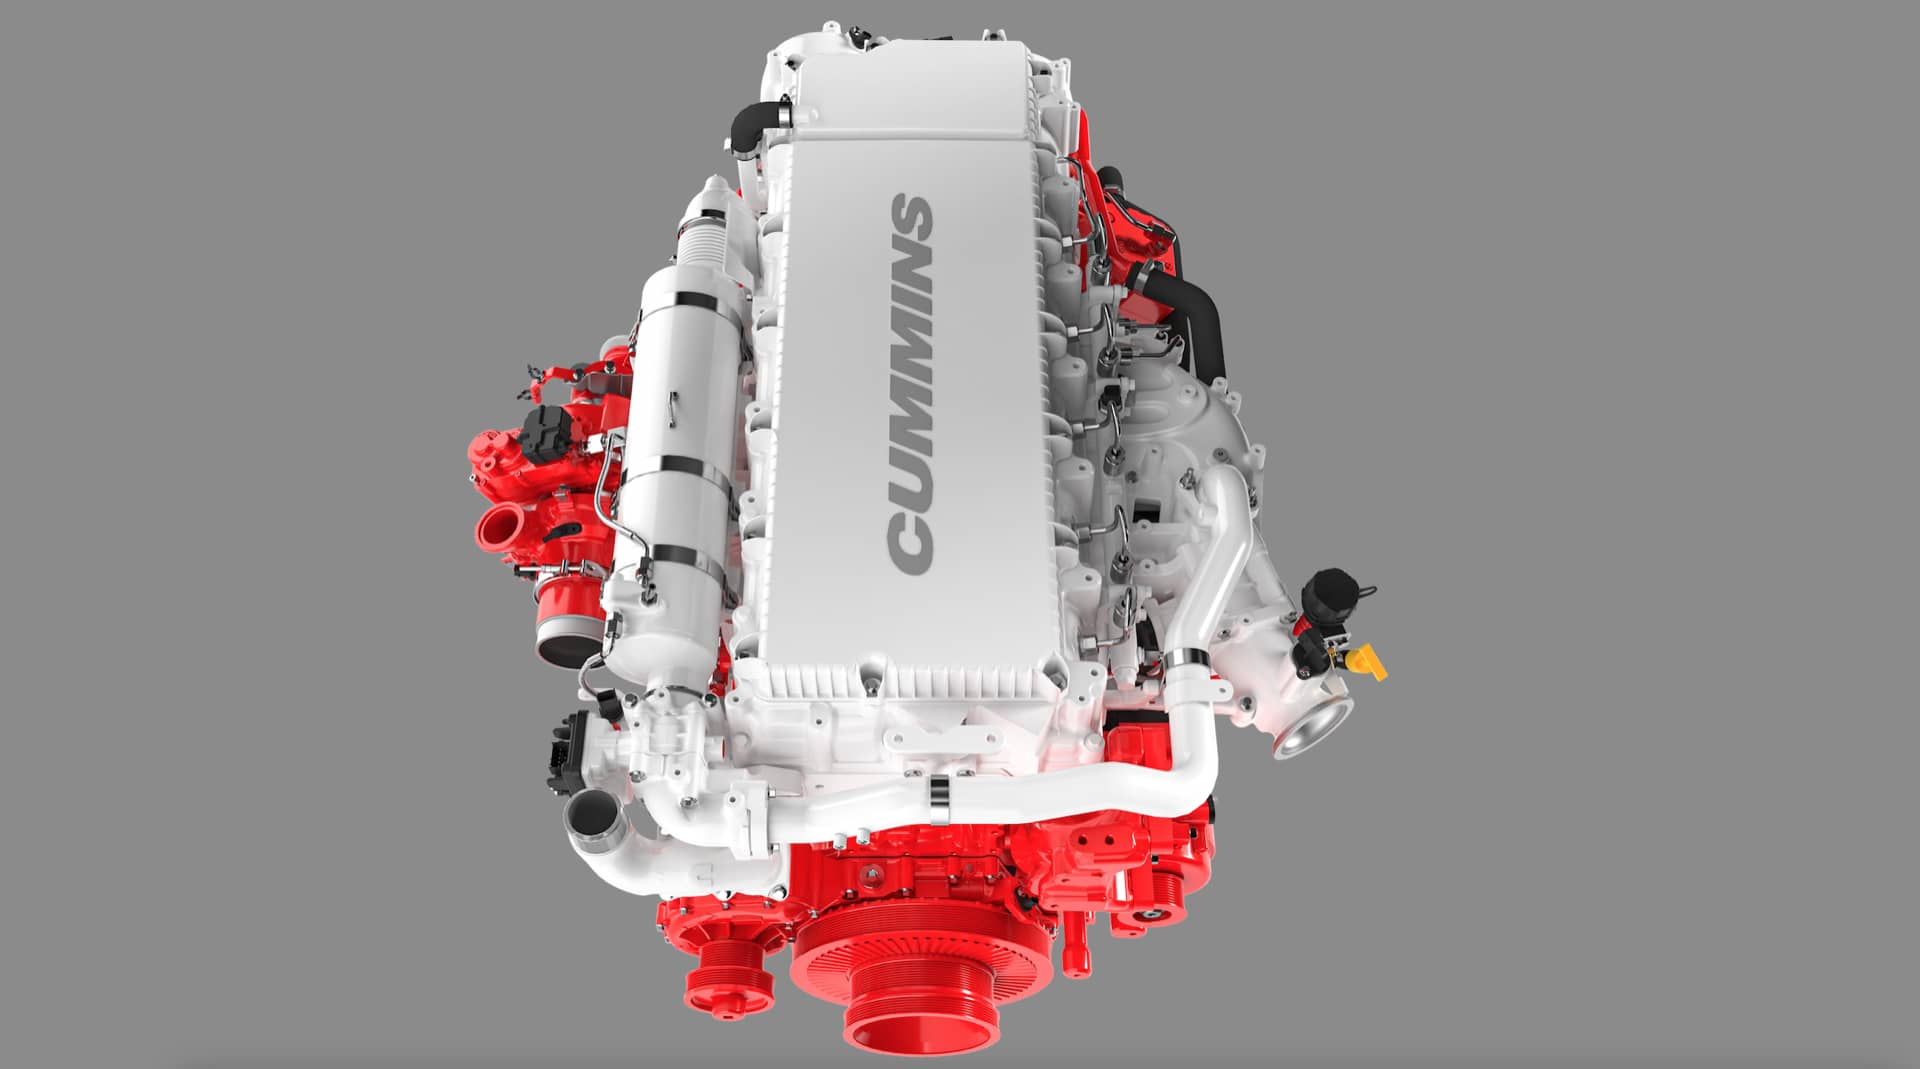 El descomunal motor diésel Cummins de 15 litros y 613 CV de potencia, un motor agnóstico que recuerda que el diésel sigue vivo